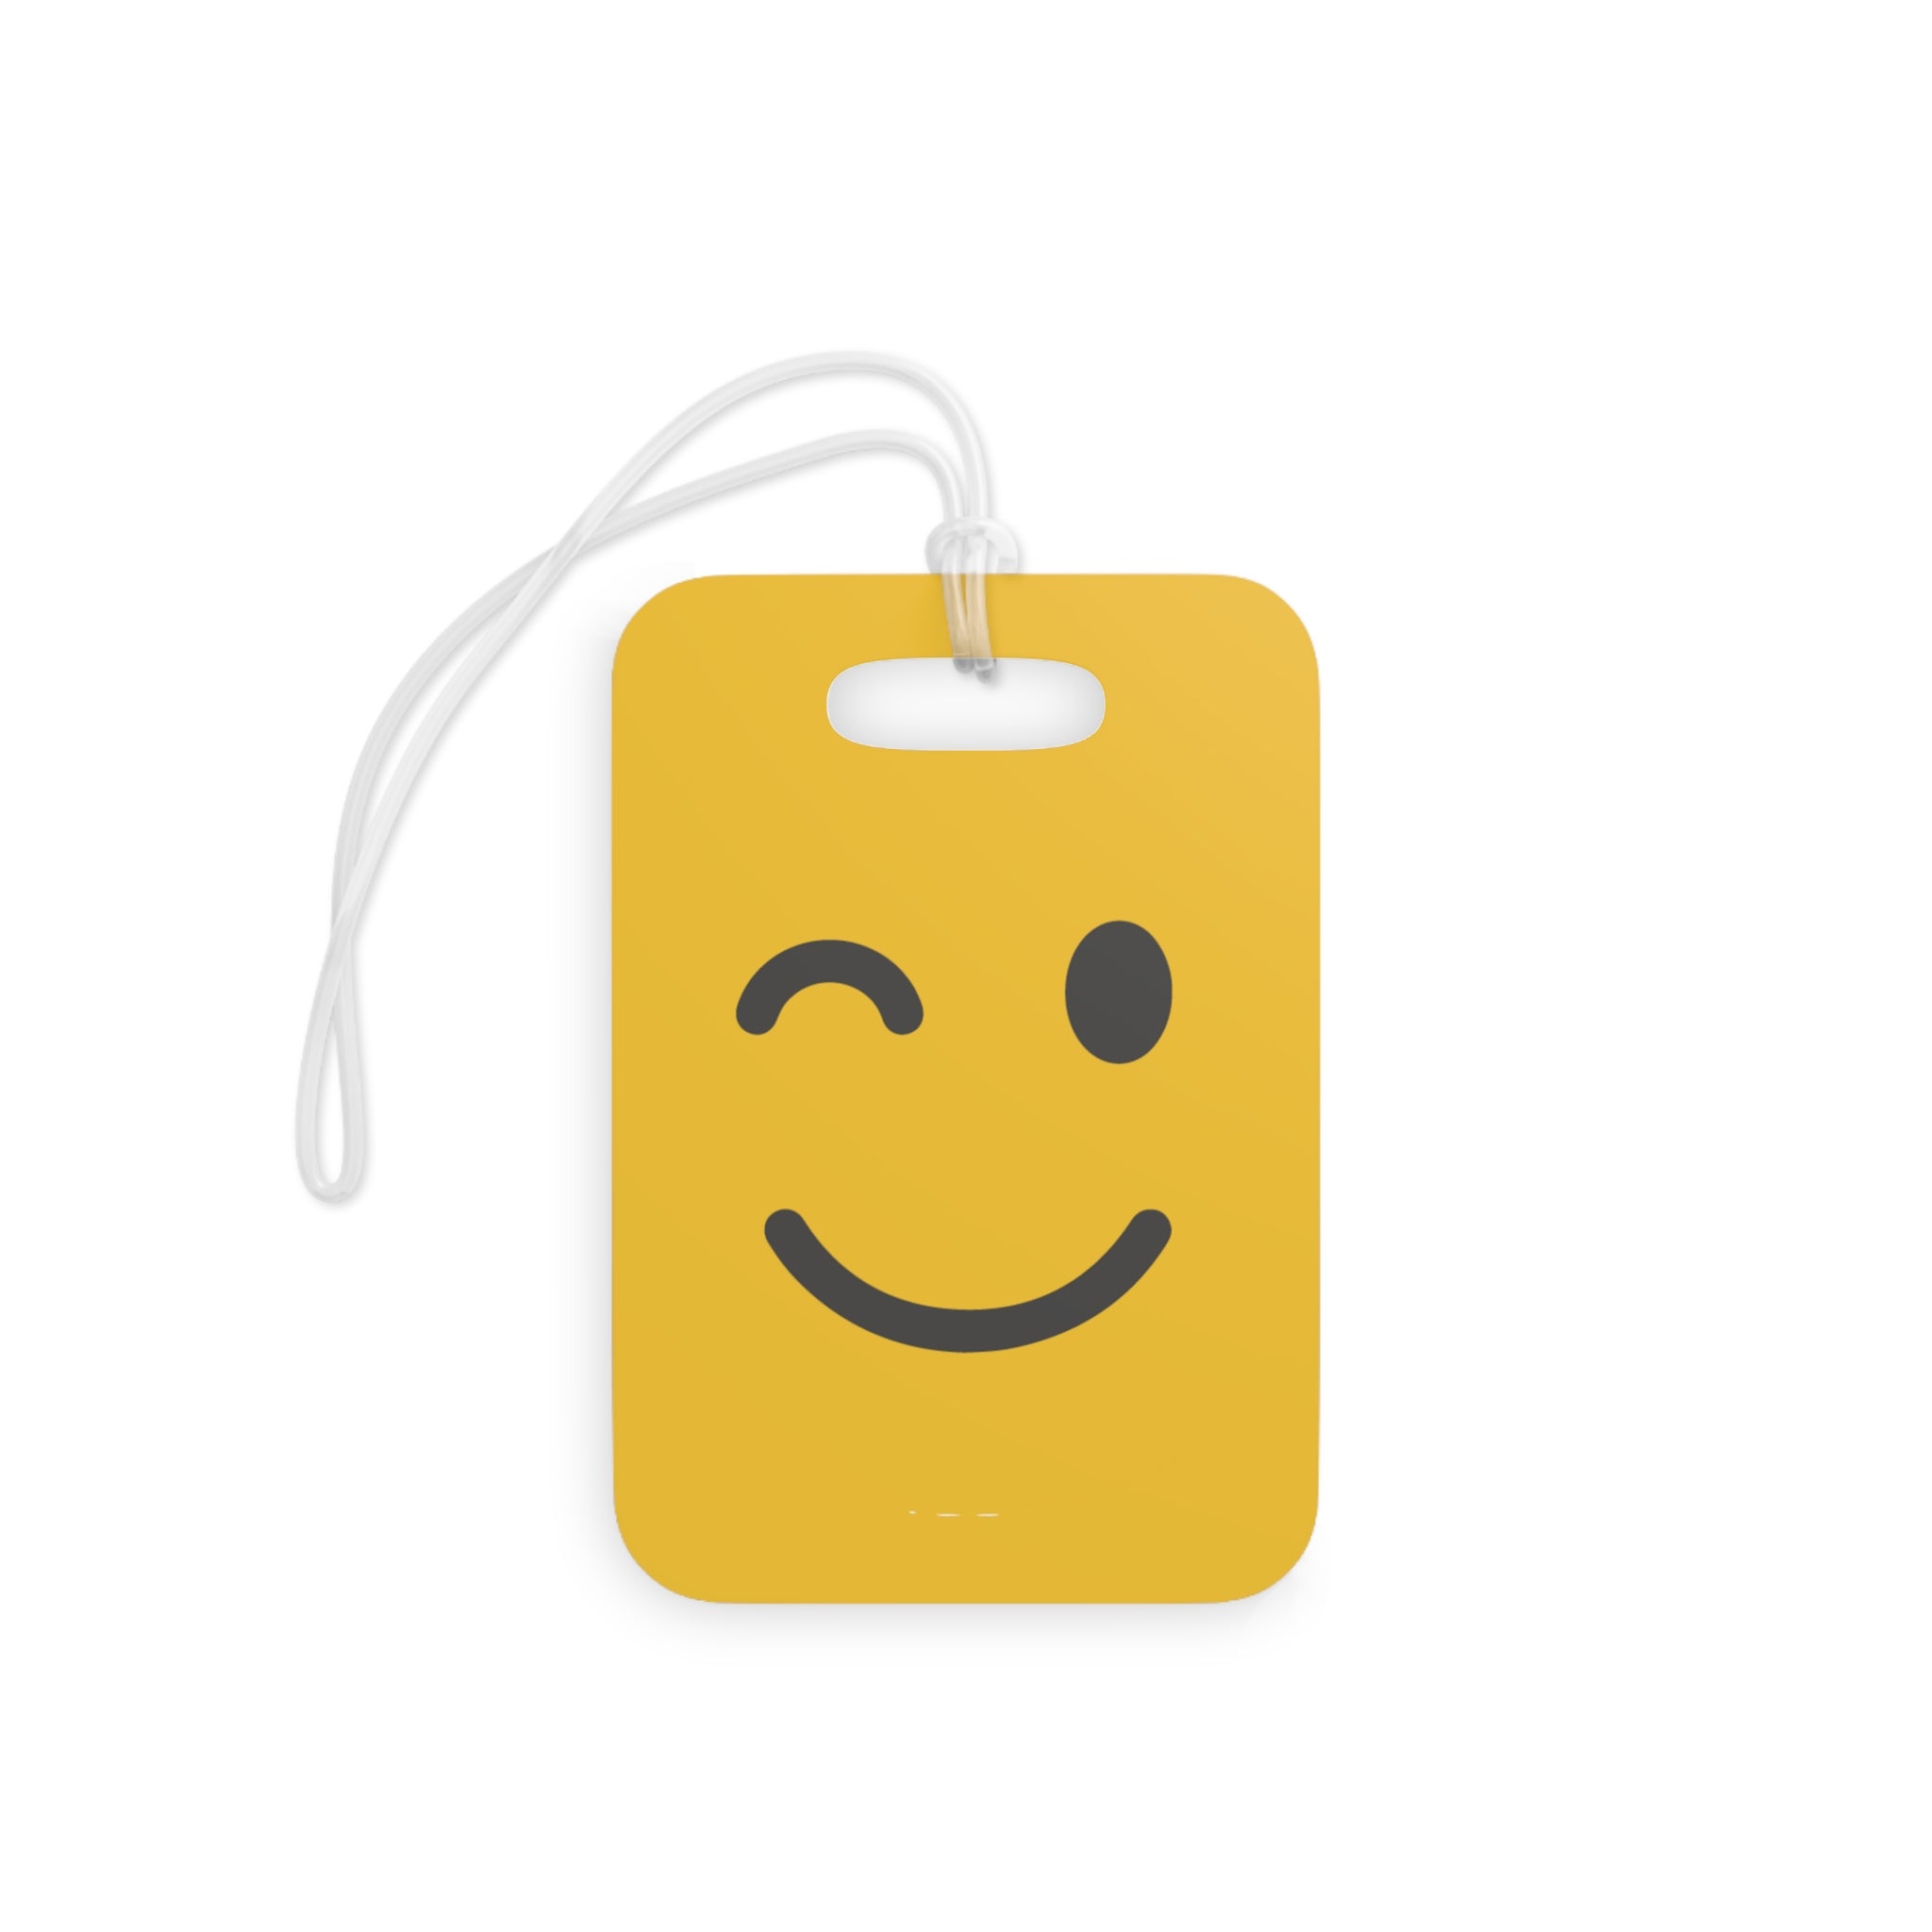 Wink Emoji Luggage Tag